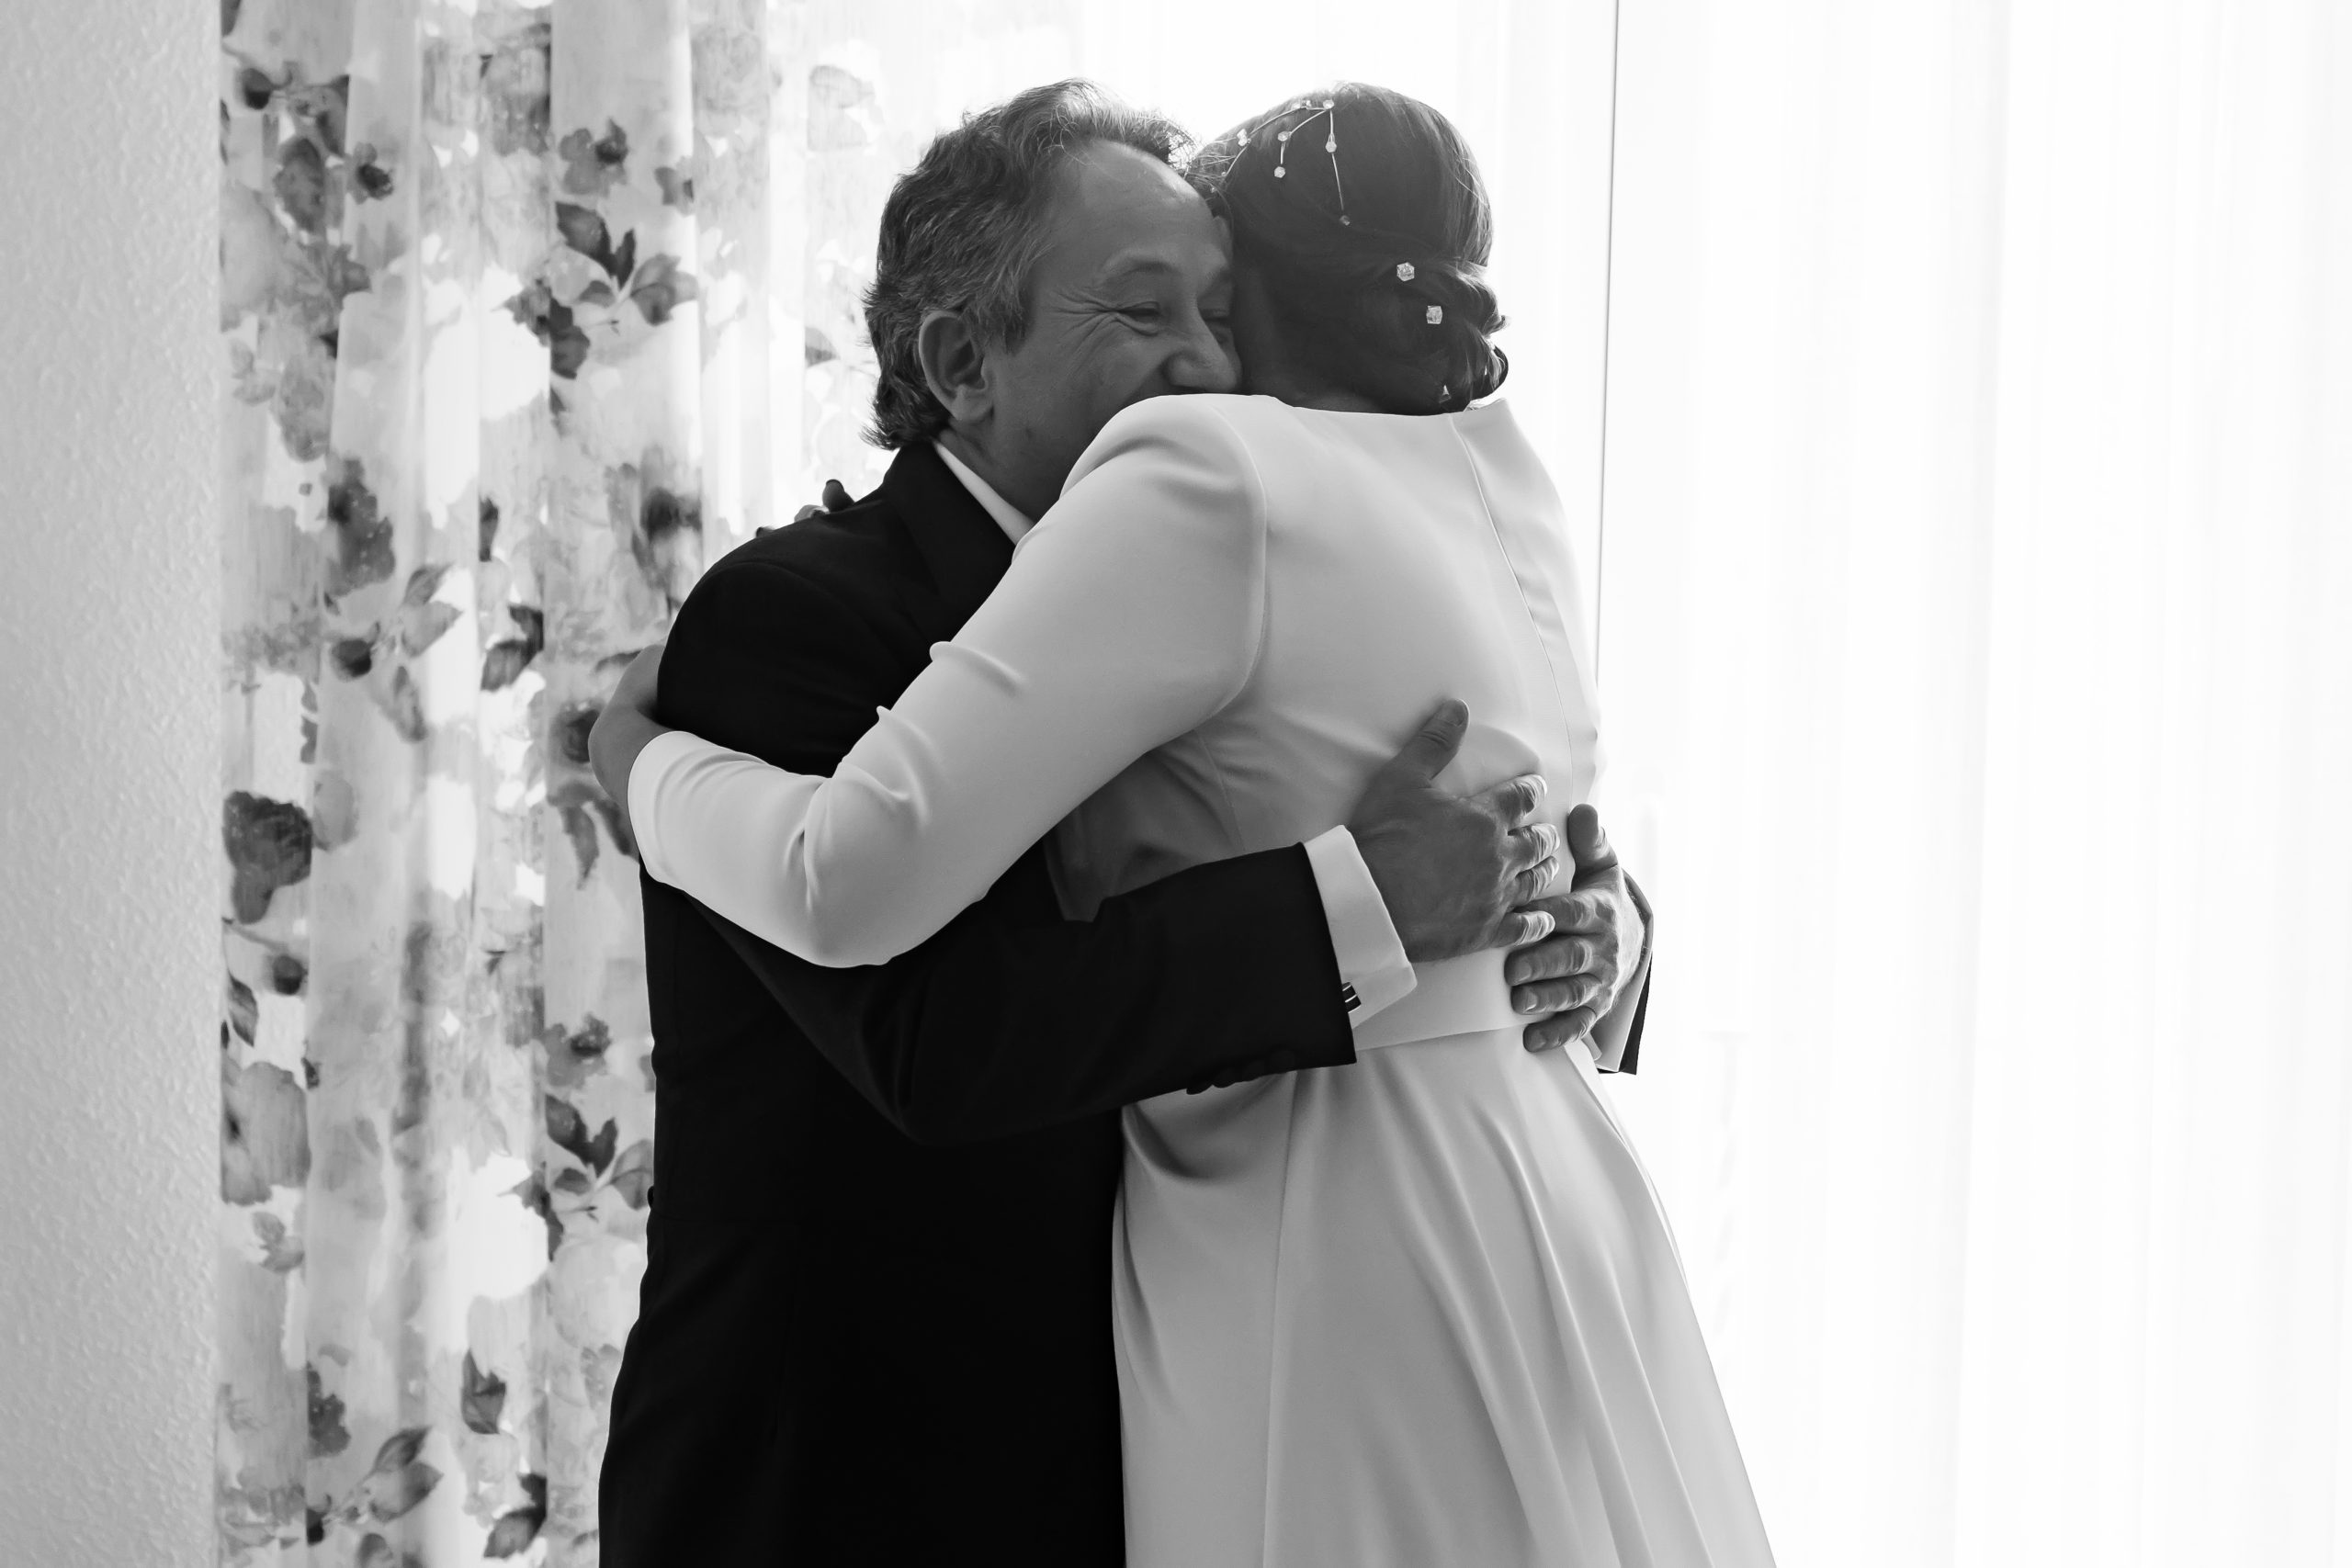 Fotografía en blanco y negro de un abrazo